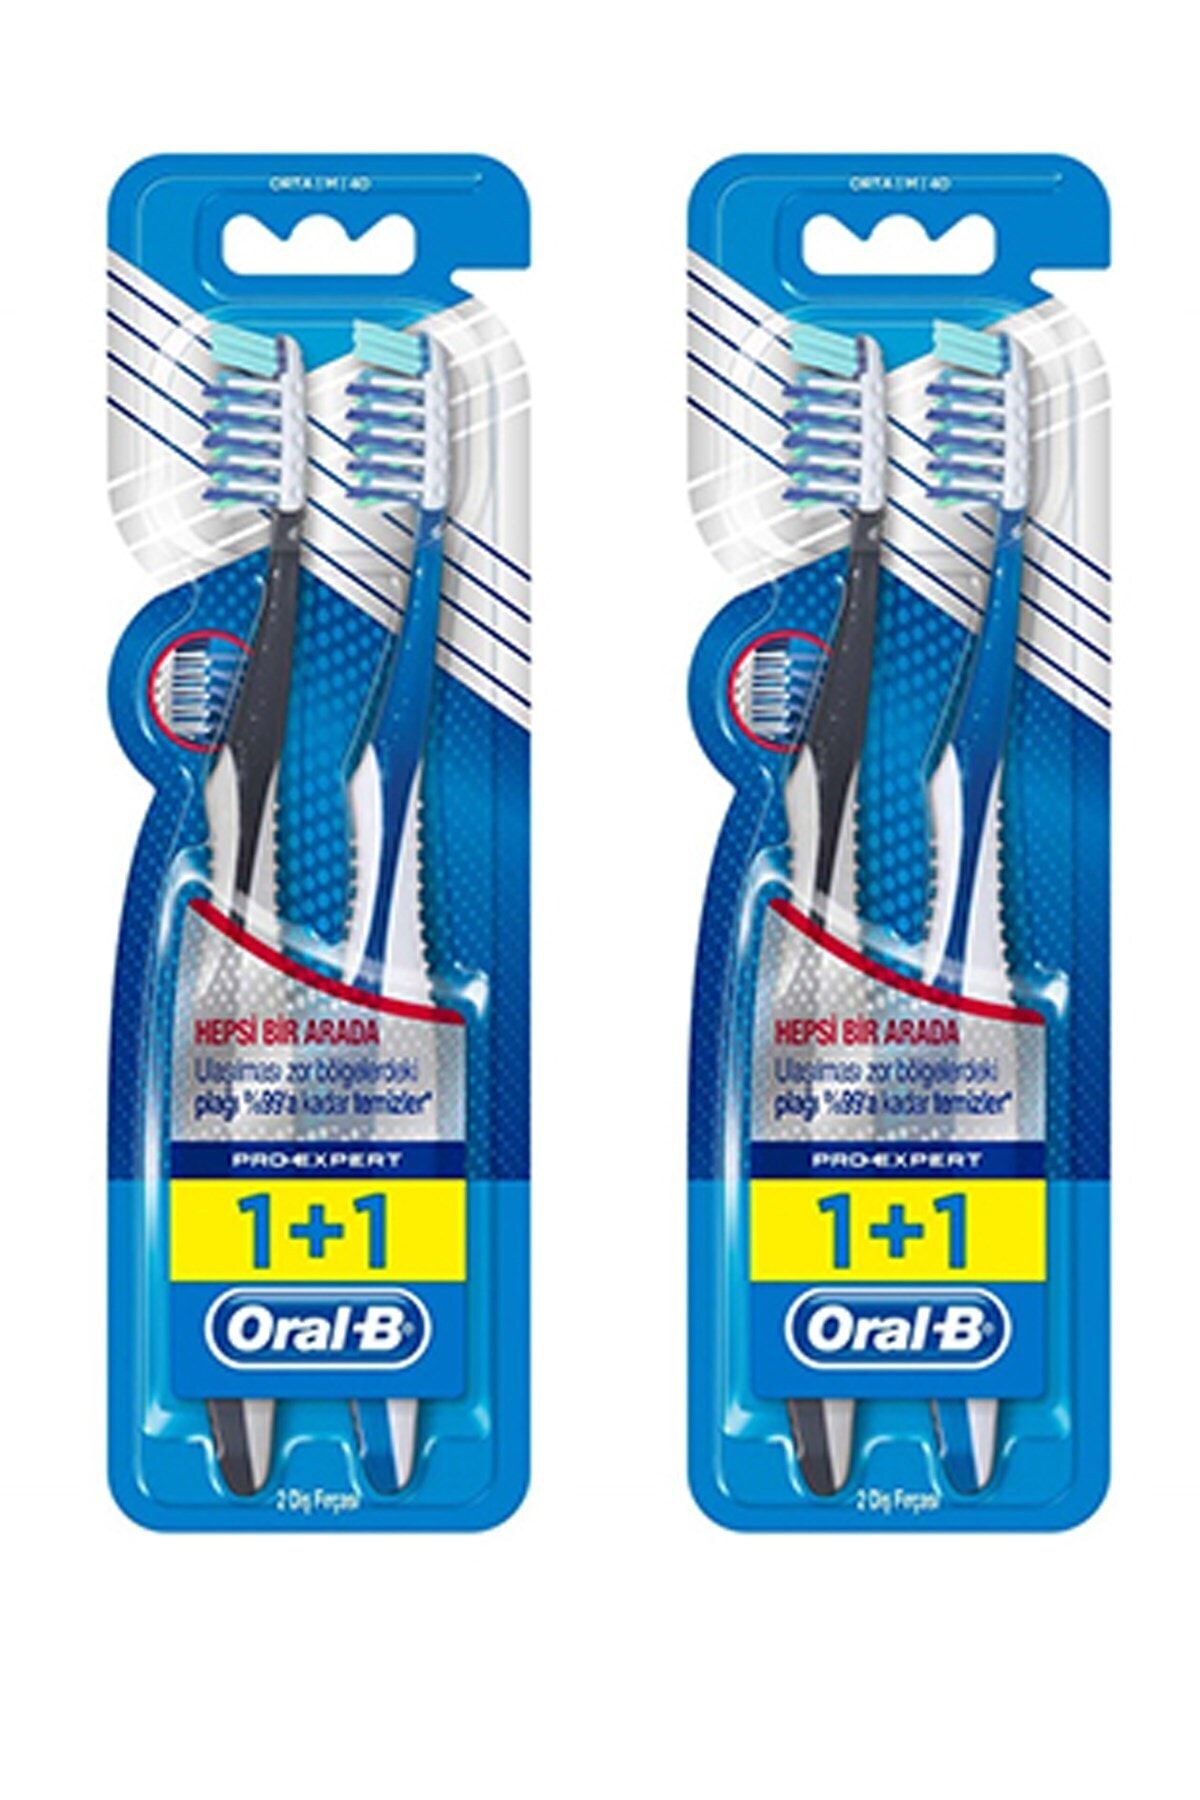 Oral-B Diş Fırçası Pro-expert Komple 1+1 - 4'lü Paket